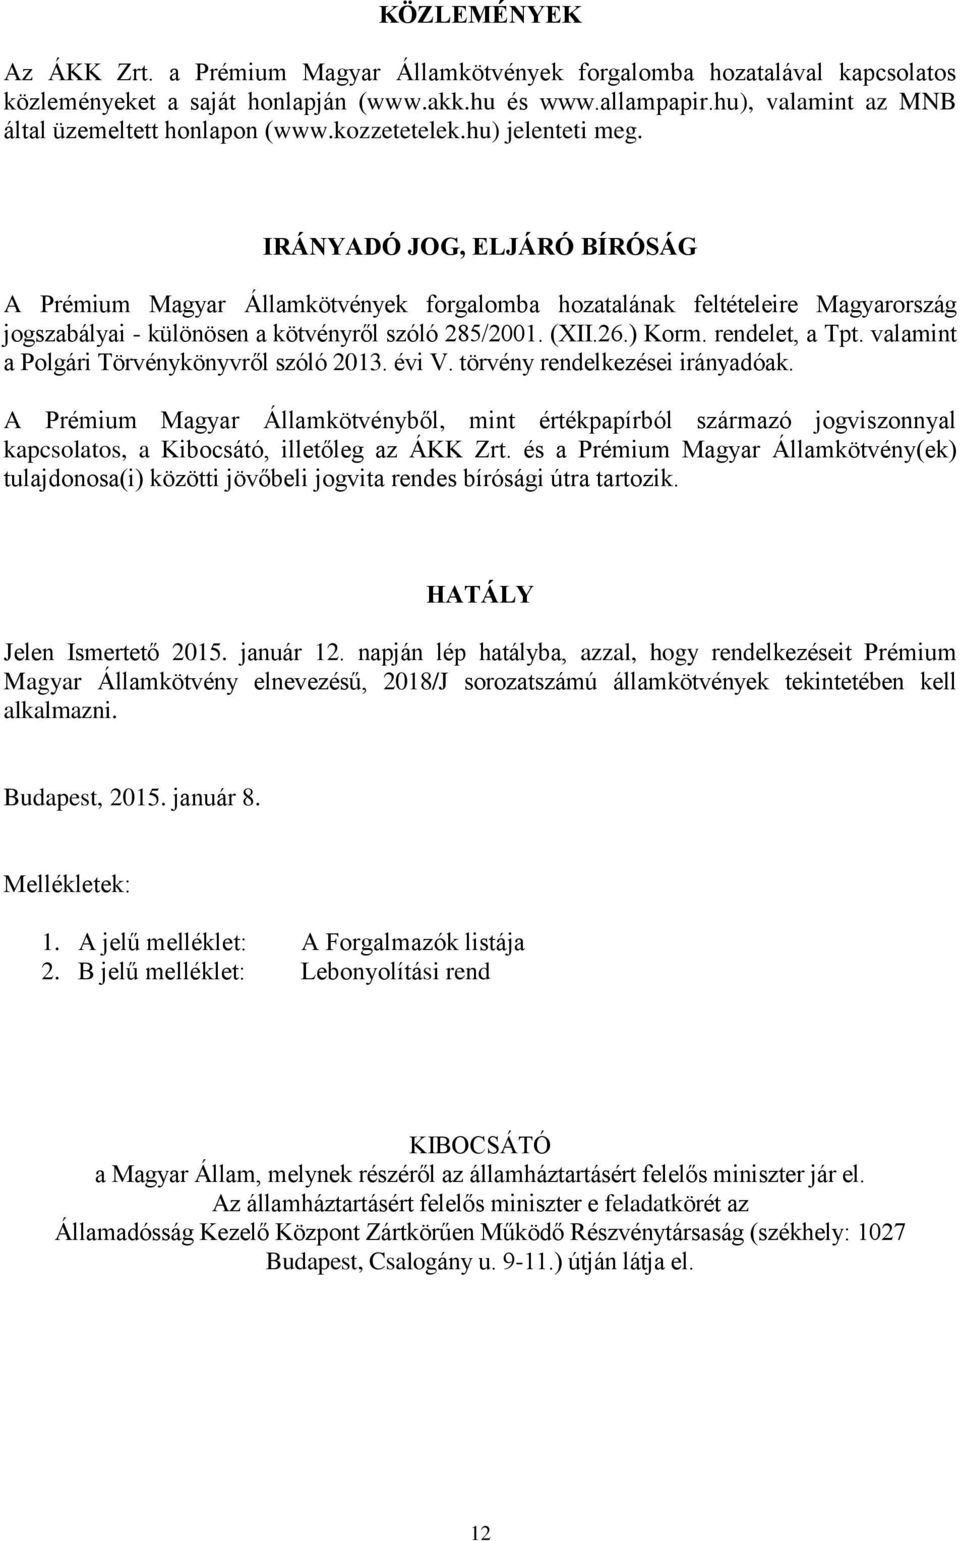 IRÁNYADÓ JOG, ELJÁRÓ BÍRÓSÁG A Prémium Magyar Államkötvények forgalomba hozatalának feltételeire Magyarország jogszabályai - különösen a kötvényről szóló 285/2001. (XII.26.) Korm. rendelet, a Tpt.